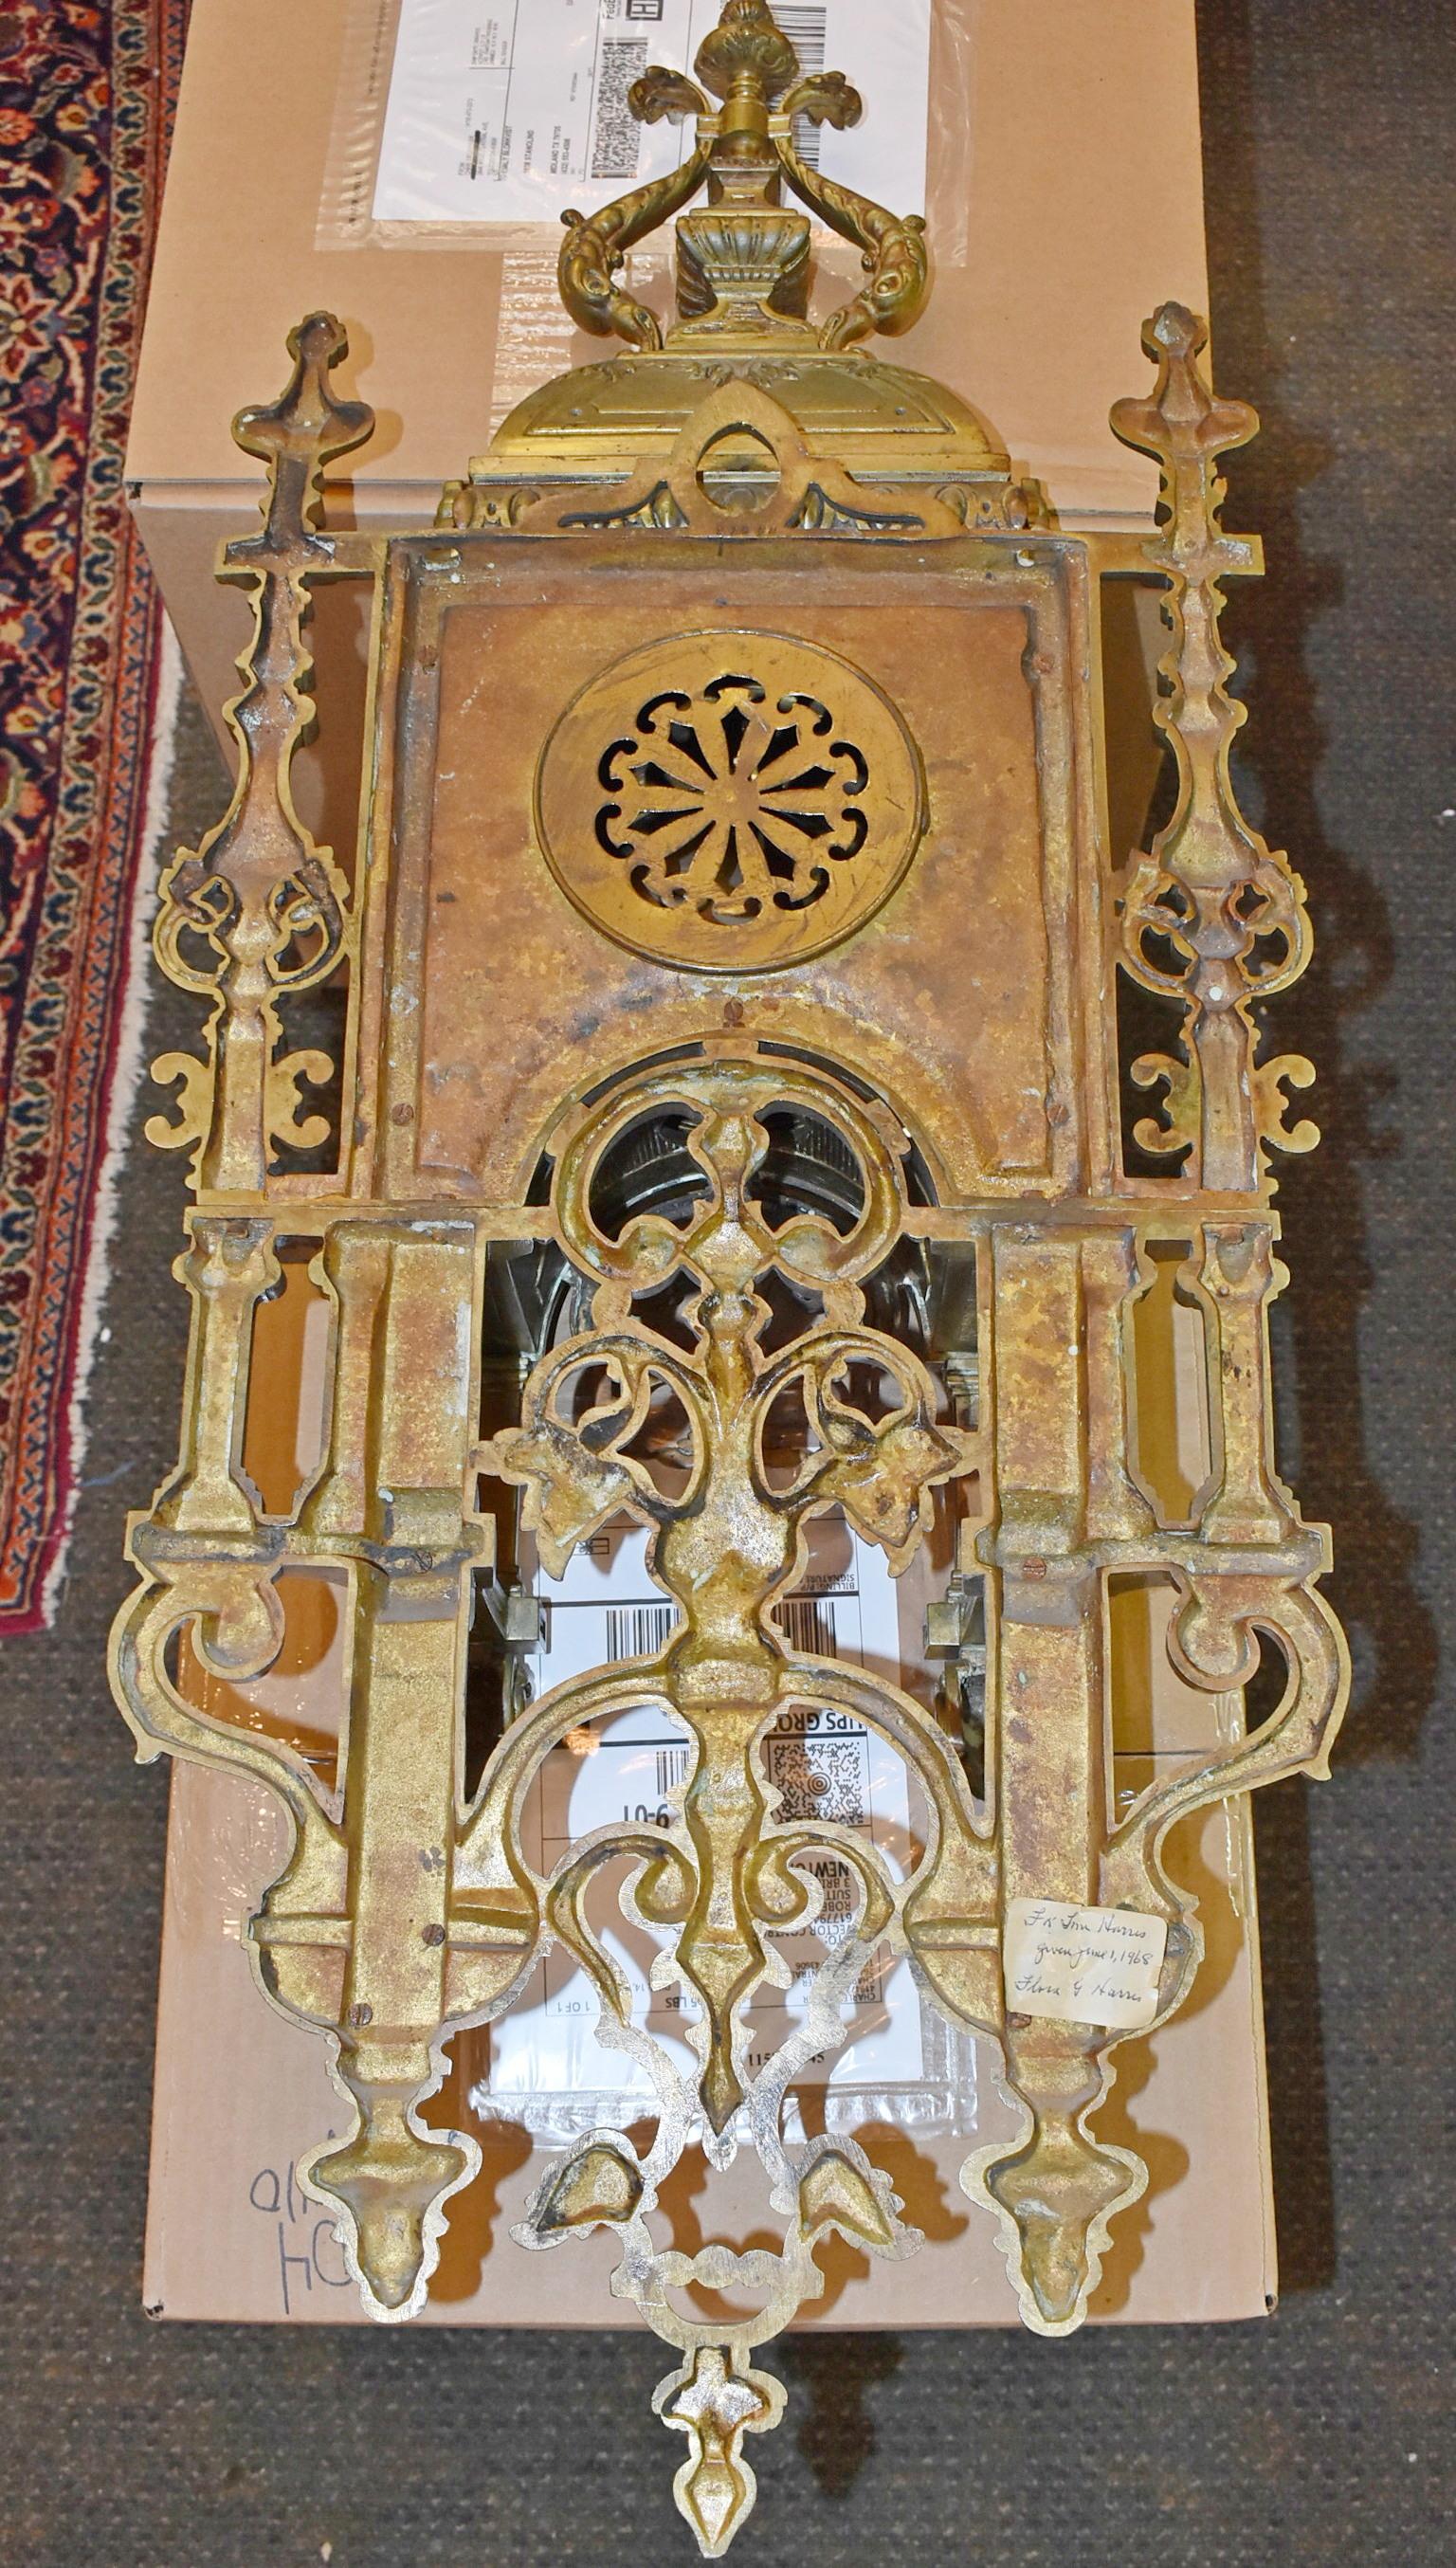 Horloge murale en bronze orné de style néo-gothique français. Circa 19ème siècle. Pendule murale en bronze français ornementée, attribuée à De La Rue. Face émaillée avec chiffres romains marquée 